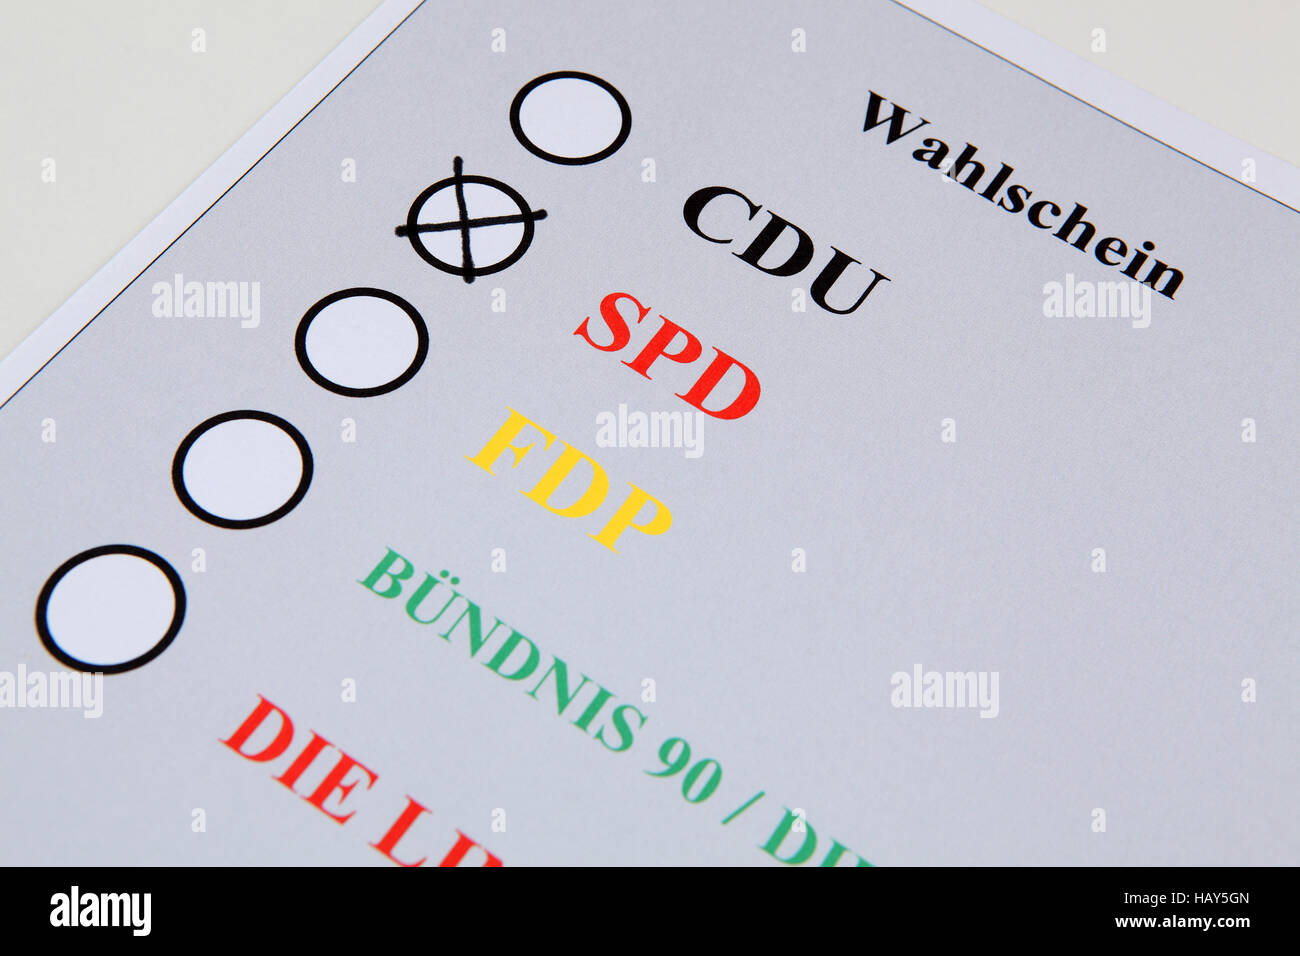 Vote SPD Stock Photo